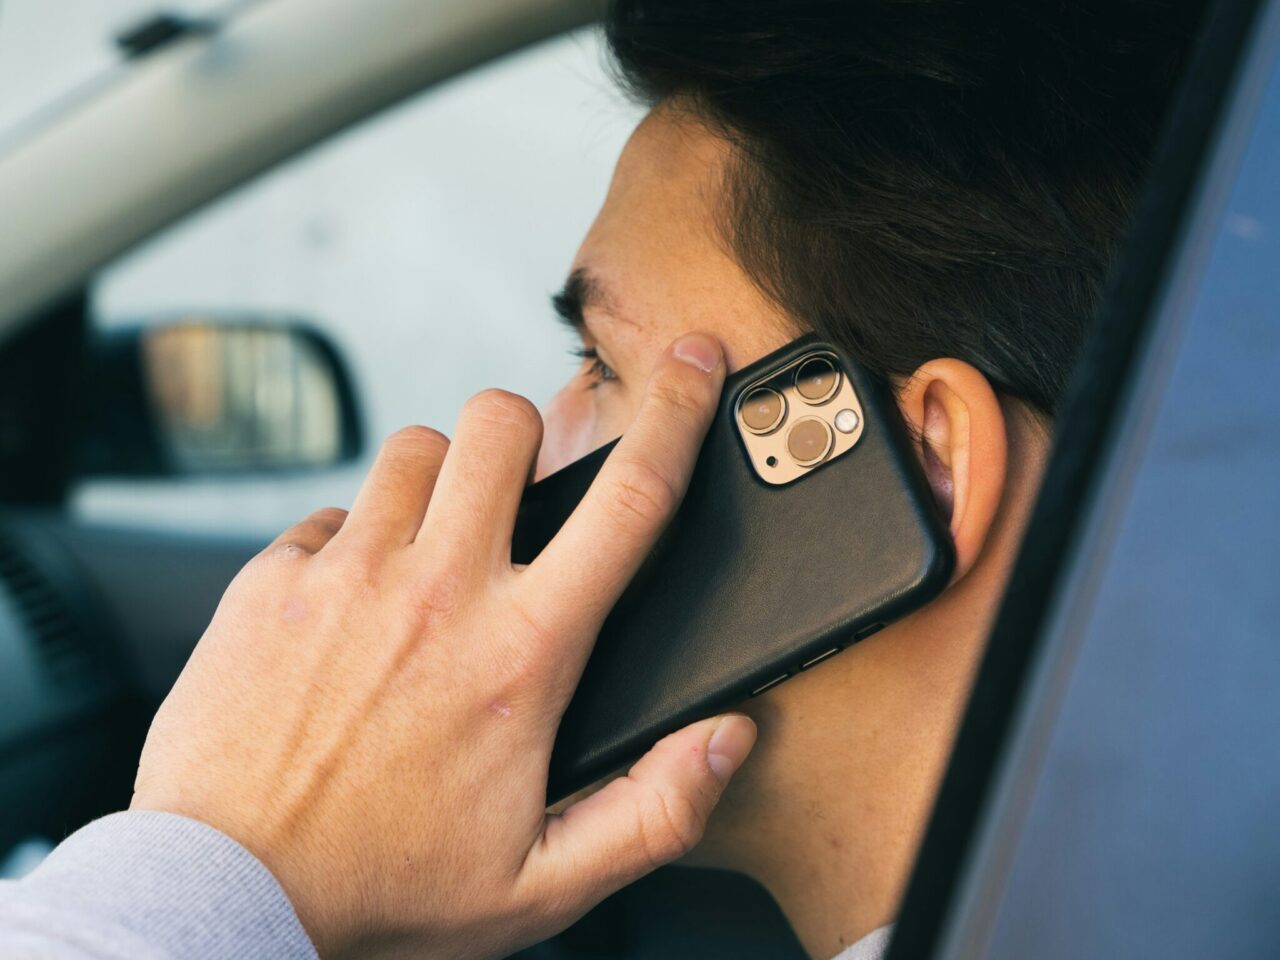 Mężczyzna rozmawia przez telefon komórkowy trzymany przy uchu, widać tylną część urządzenia z aparatami fotograficznymi.